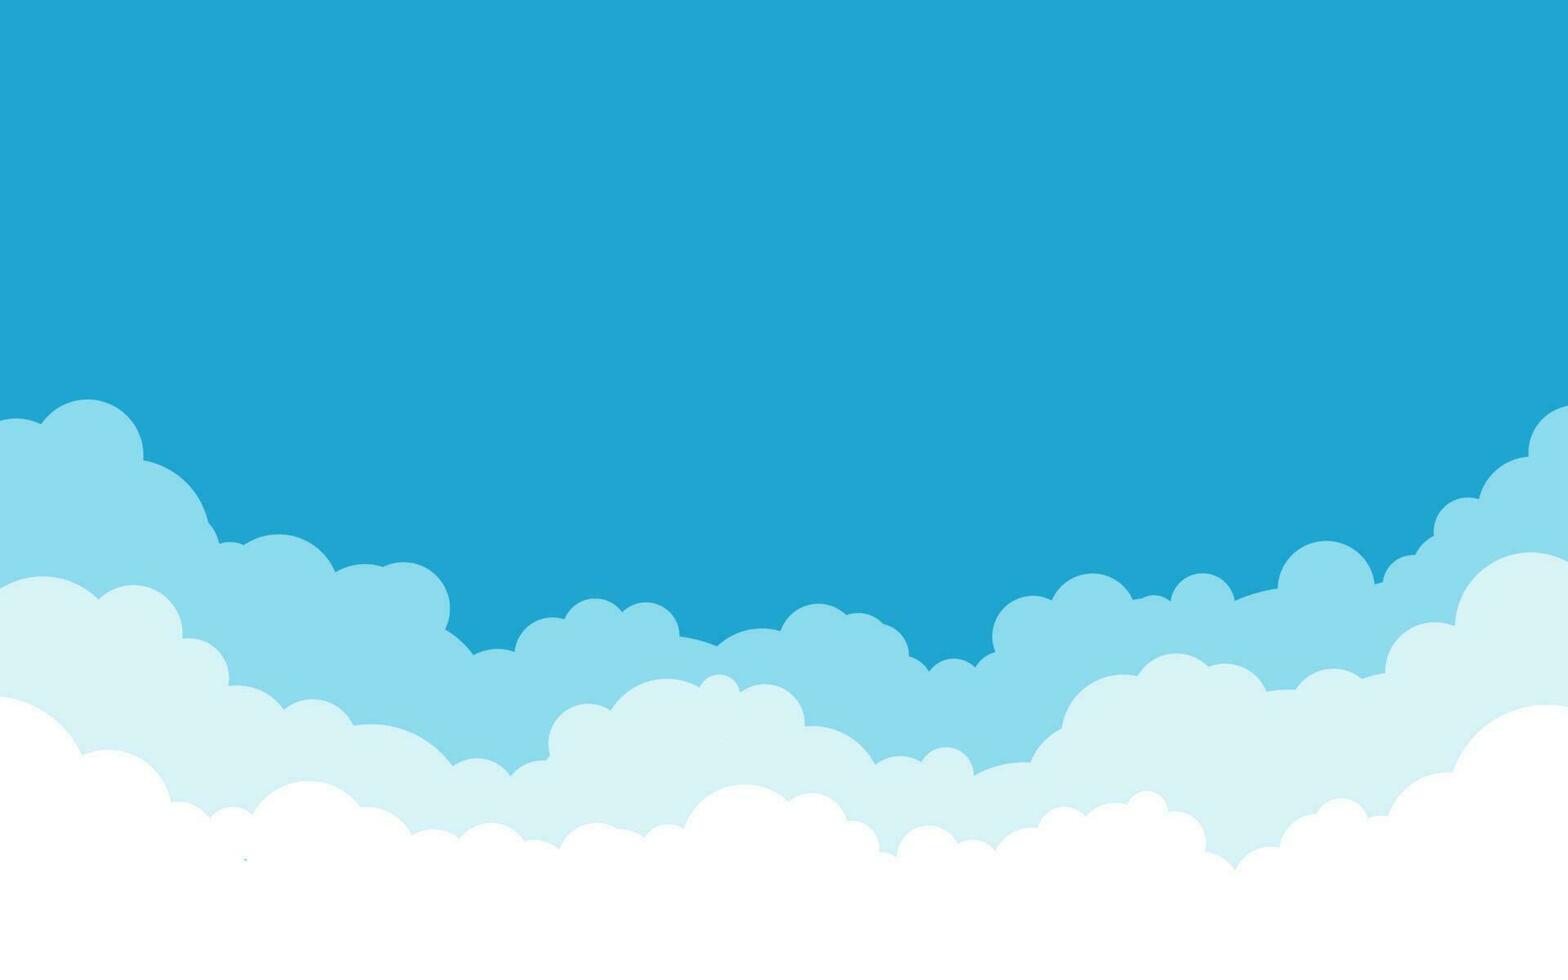 bleu ciel avec blanc des nuages Contexte. dessin animé plat style conception. vecteur illustration